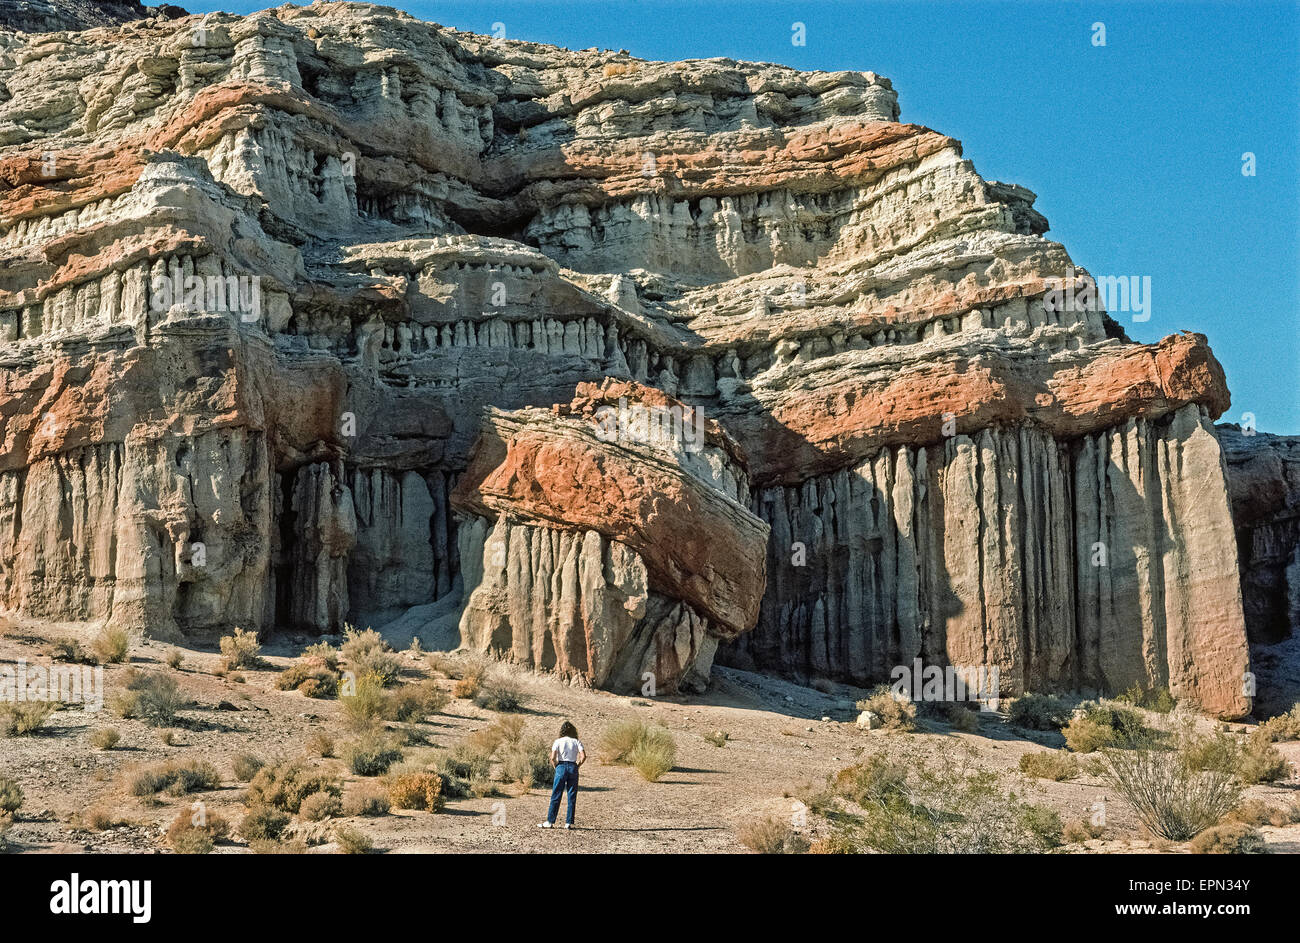 Spektakuläre Klippen und Kuppen mit Felsformationen der dramatischen Formen  und leuchtenden Farben Zwerge einen Besucher am Red Rock Canyon State Park  in der Mojave-Wüste am südlichsten Rand der Sierra Nevada Bergkette in